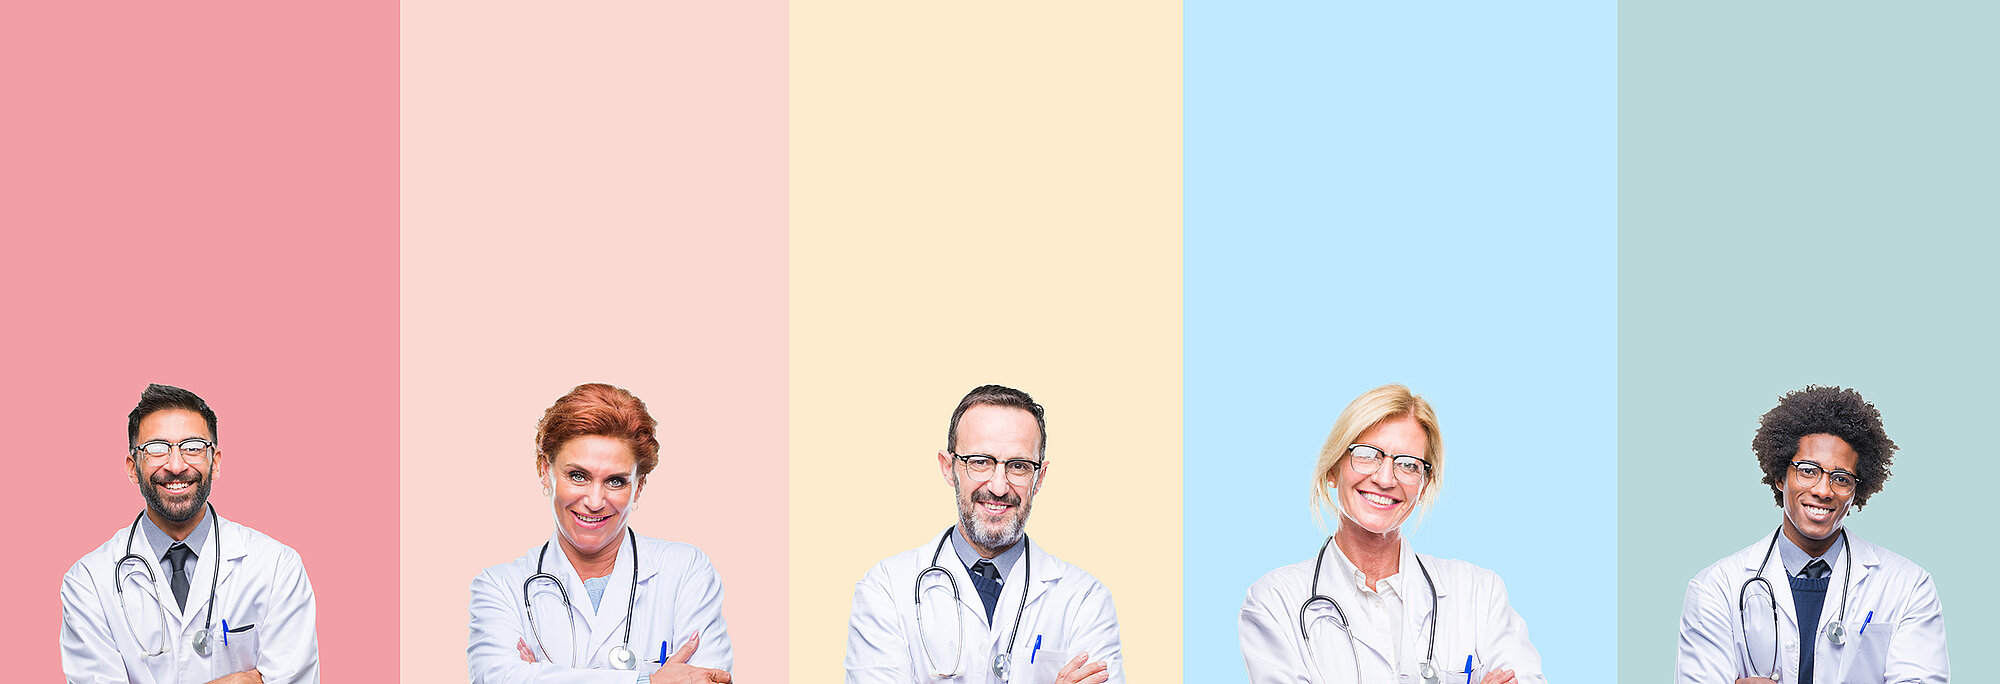 Startbild: Foto von 5 Ärztinnen und Ärzten, die jeder vor einem anderen farblichen Hintergrund nebeneinander stehen